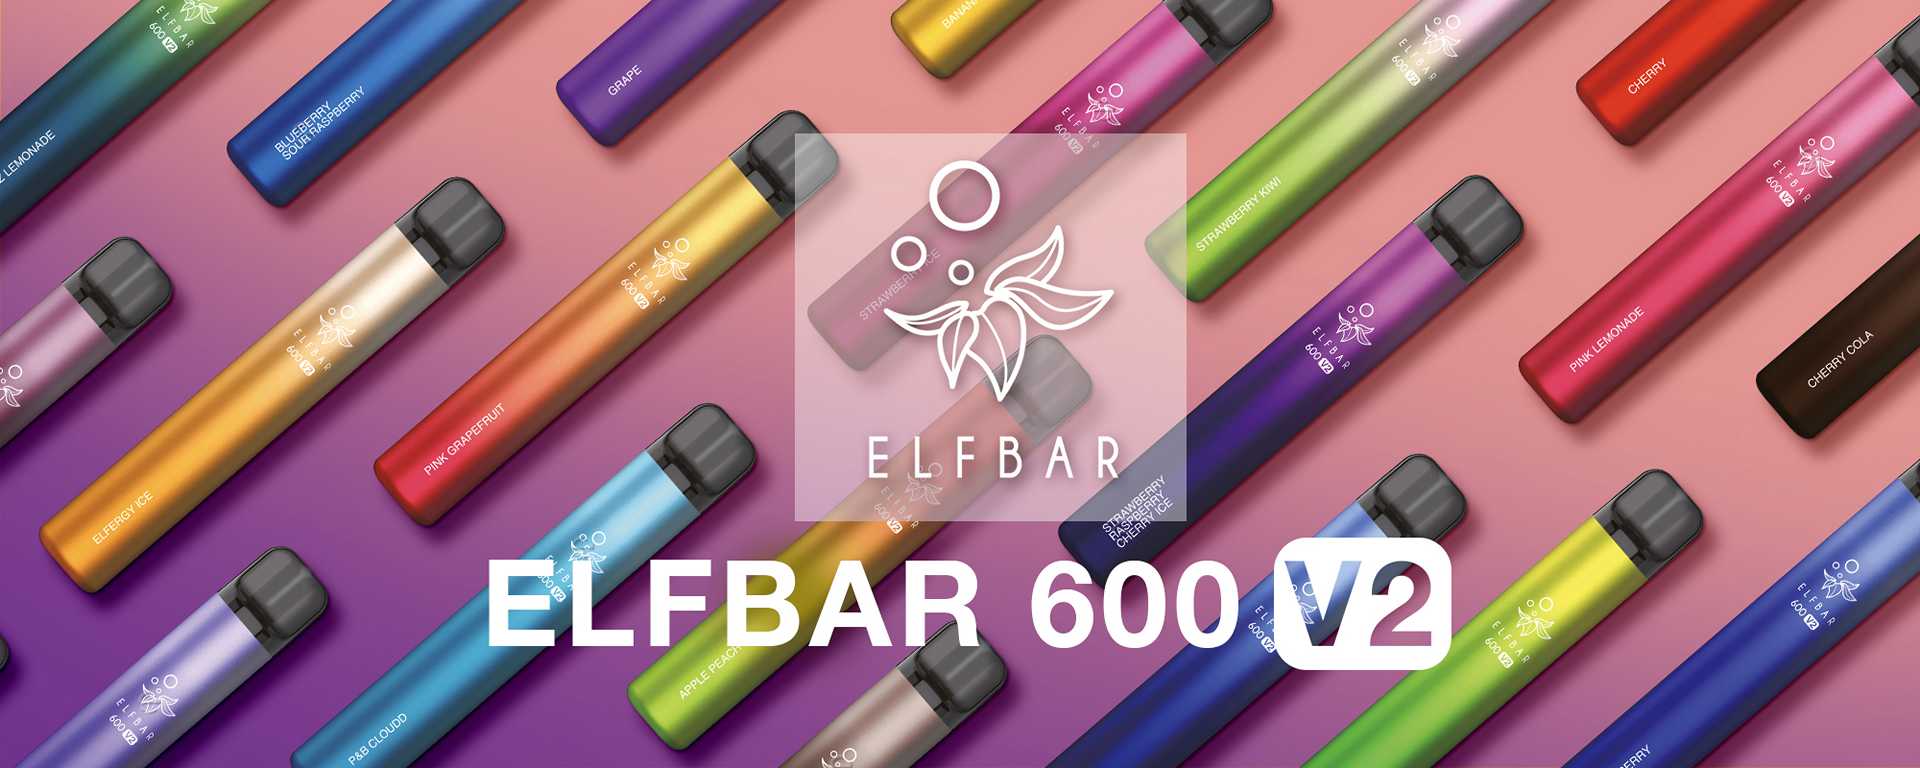 ELFBAR V2 600